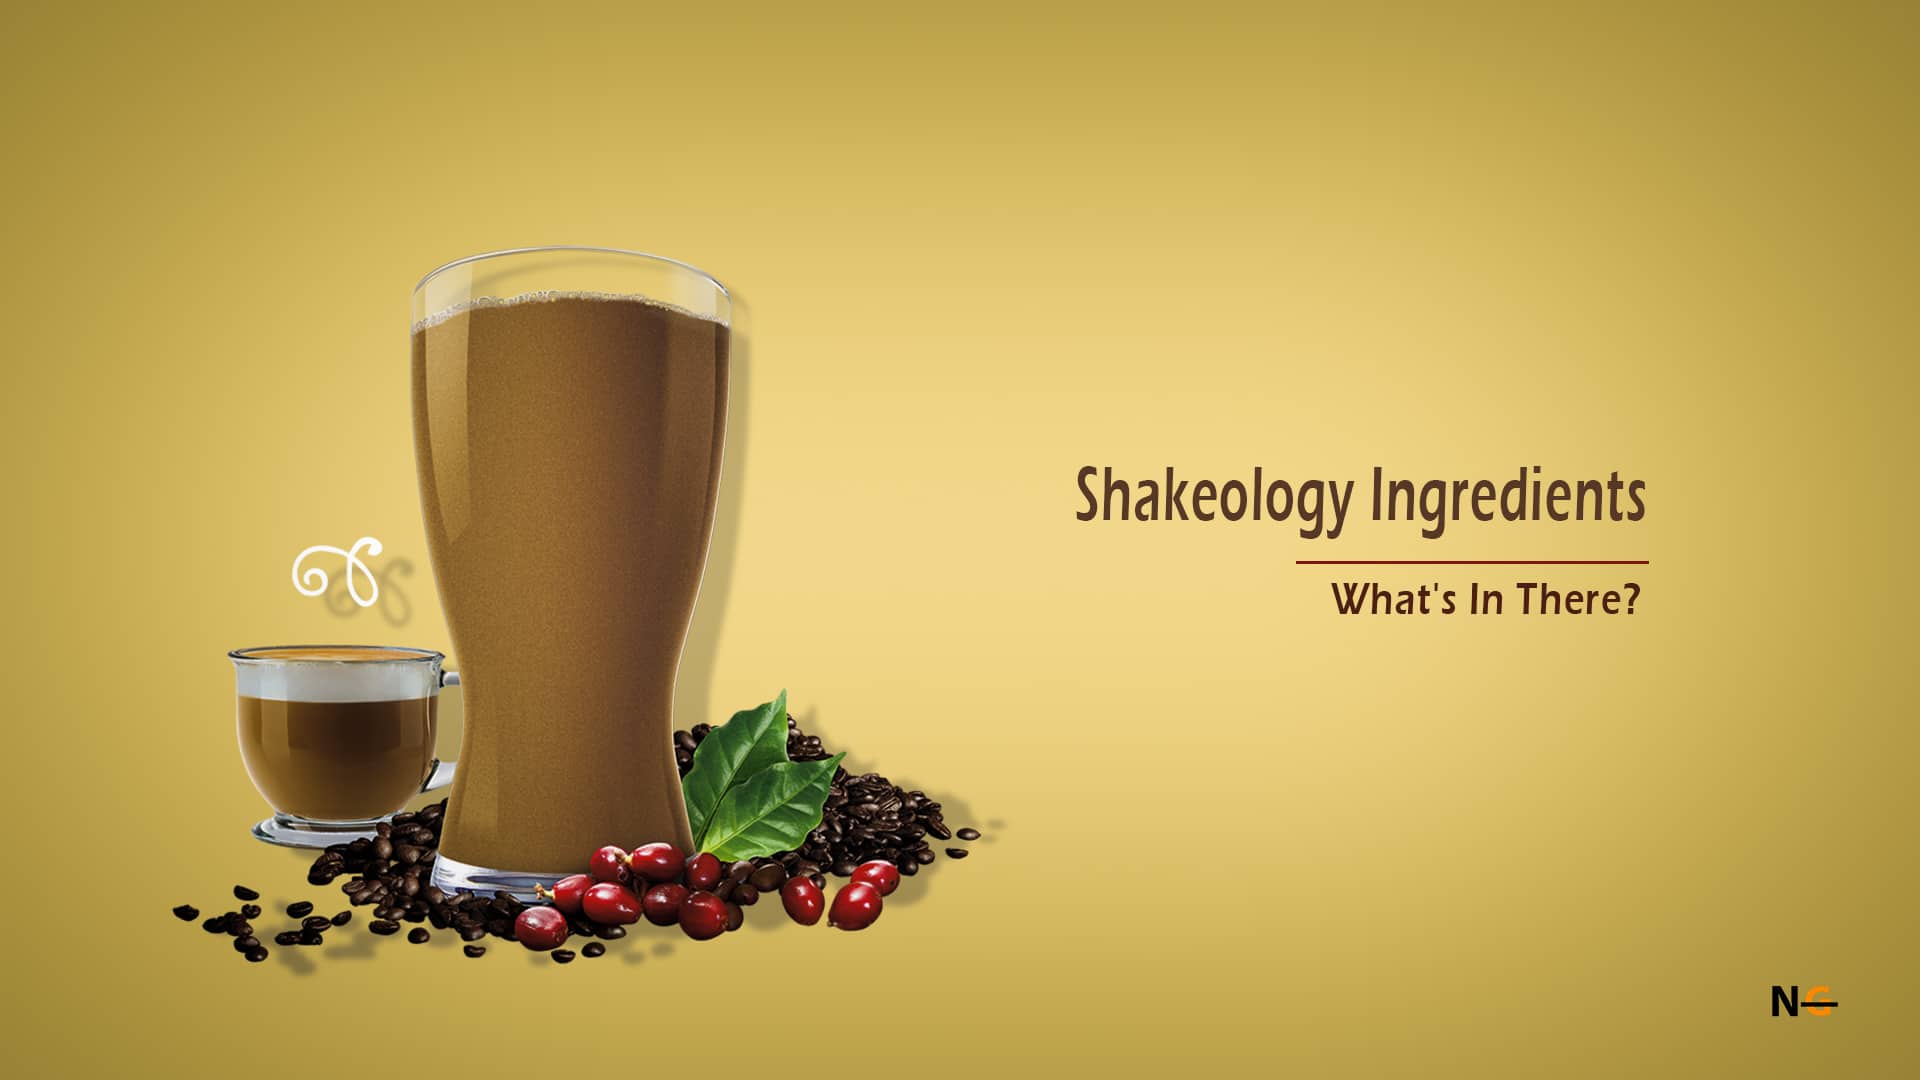 Shakeology Ingredients